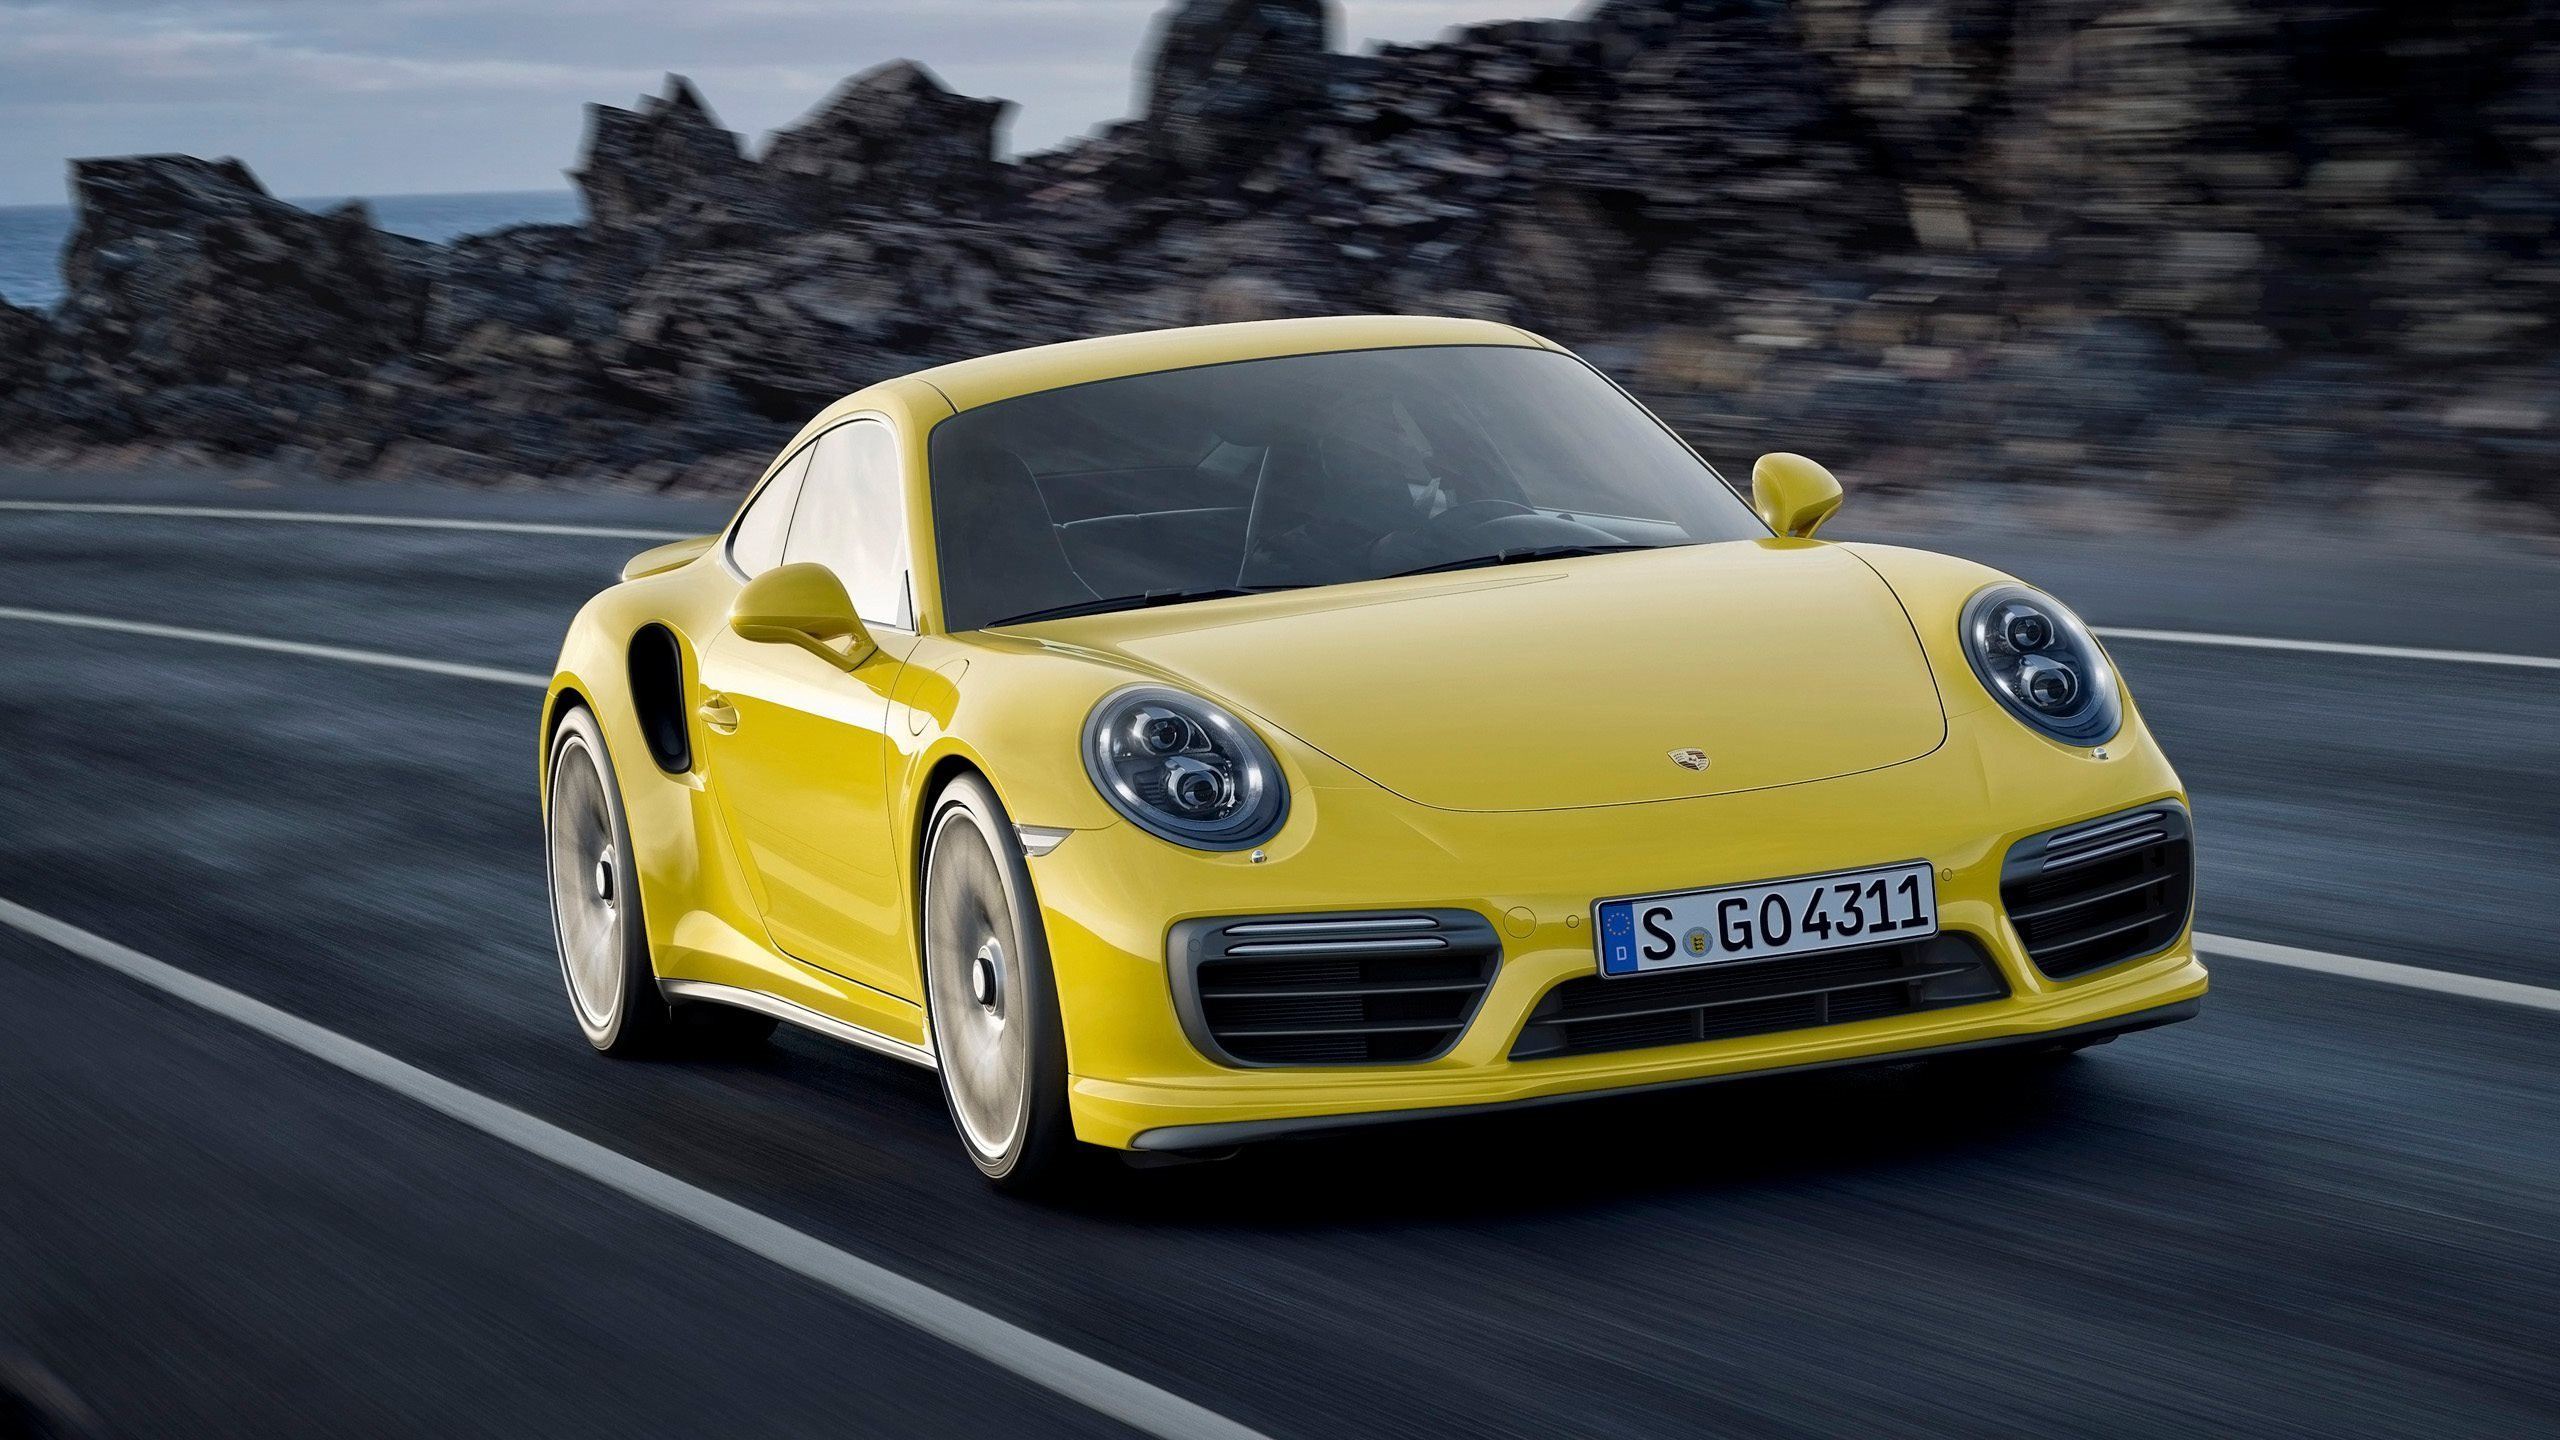 Porsche 911 Amarillo en la Carretera Durante el Día. Wallpaper in 2560x1440 Resolution